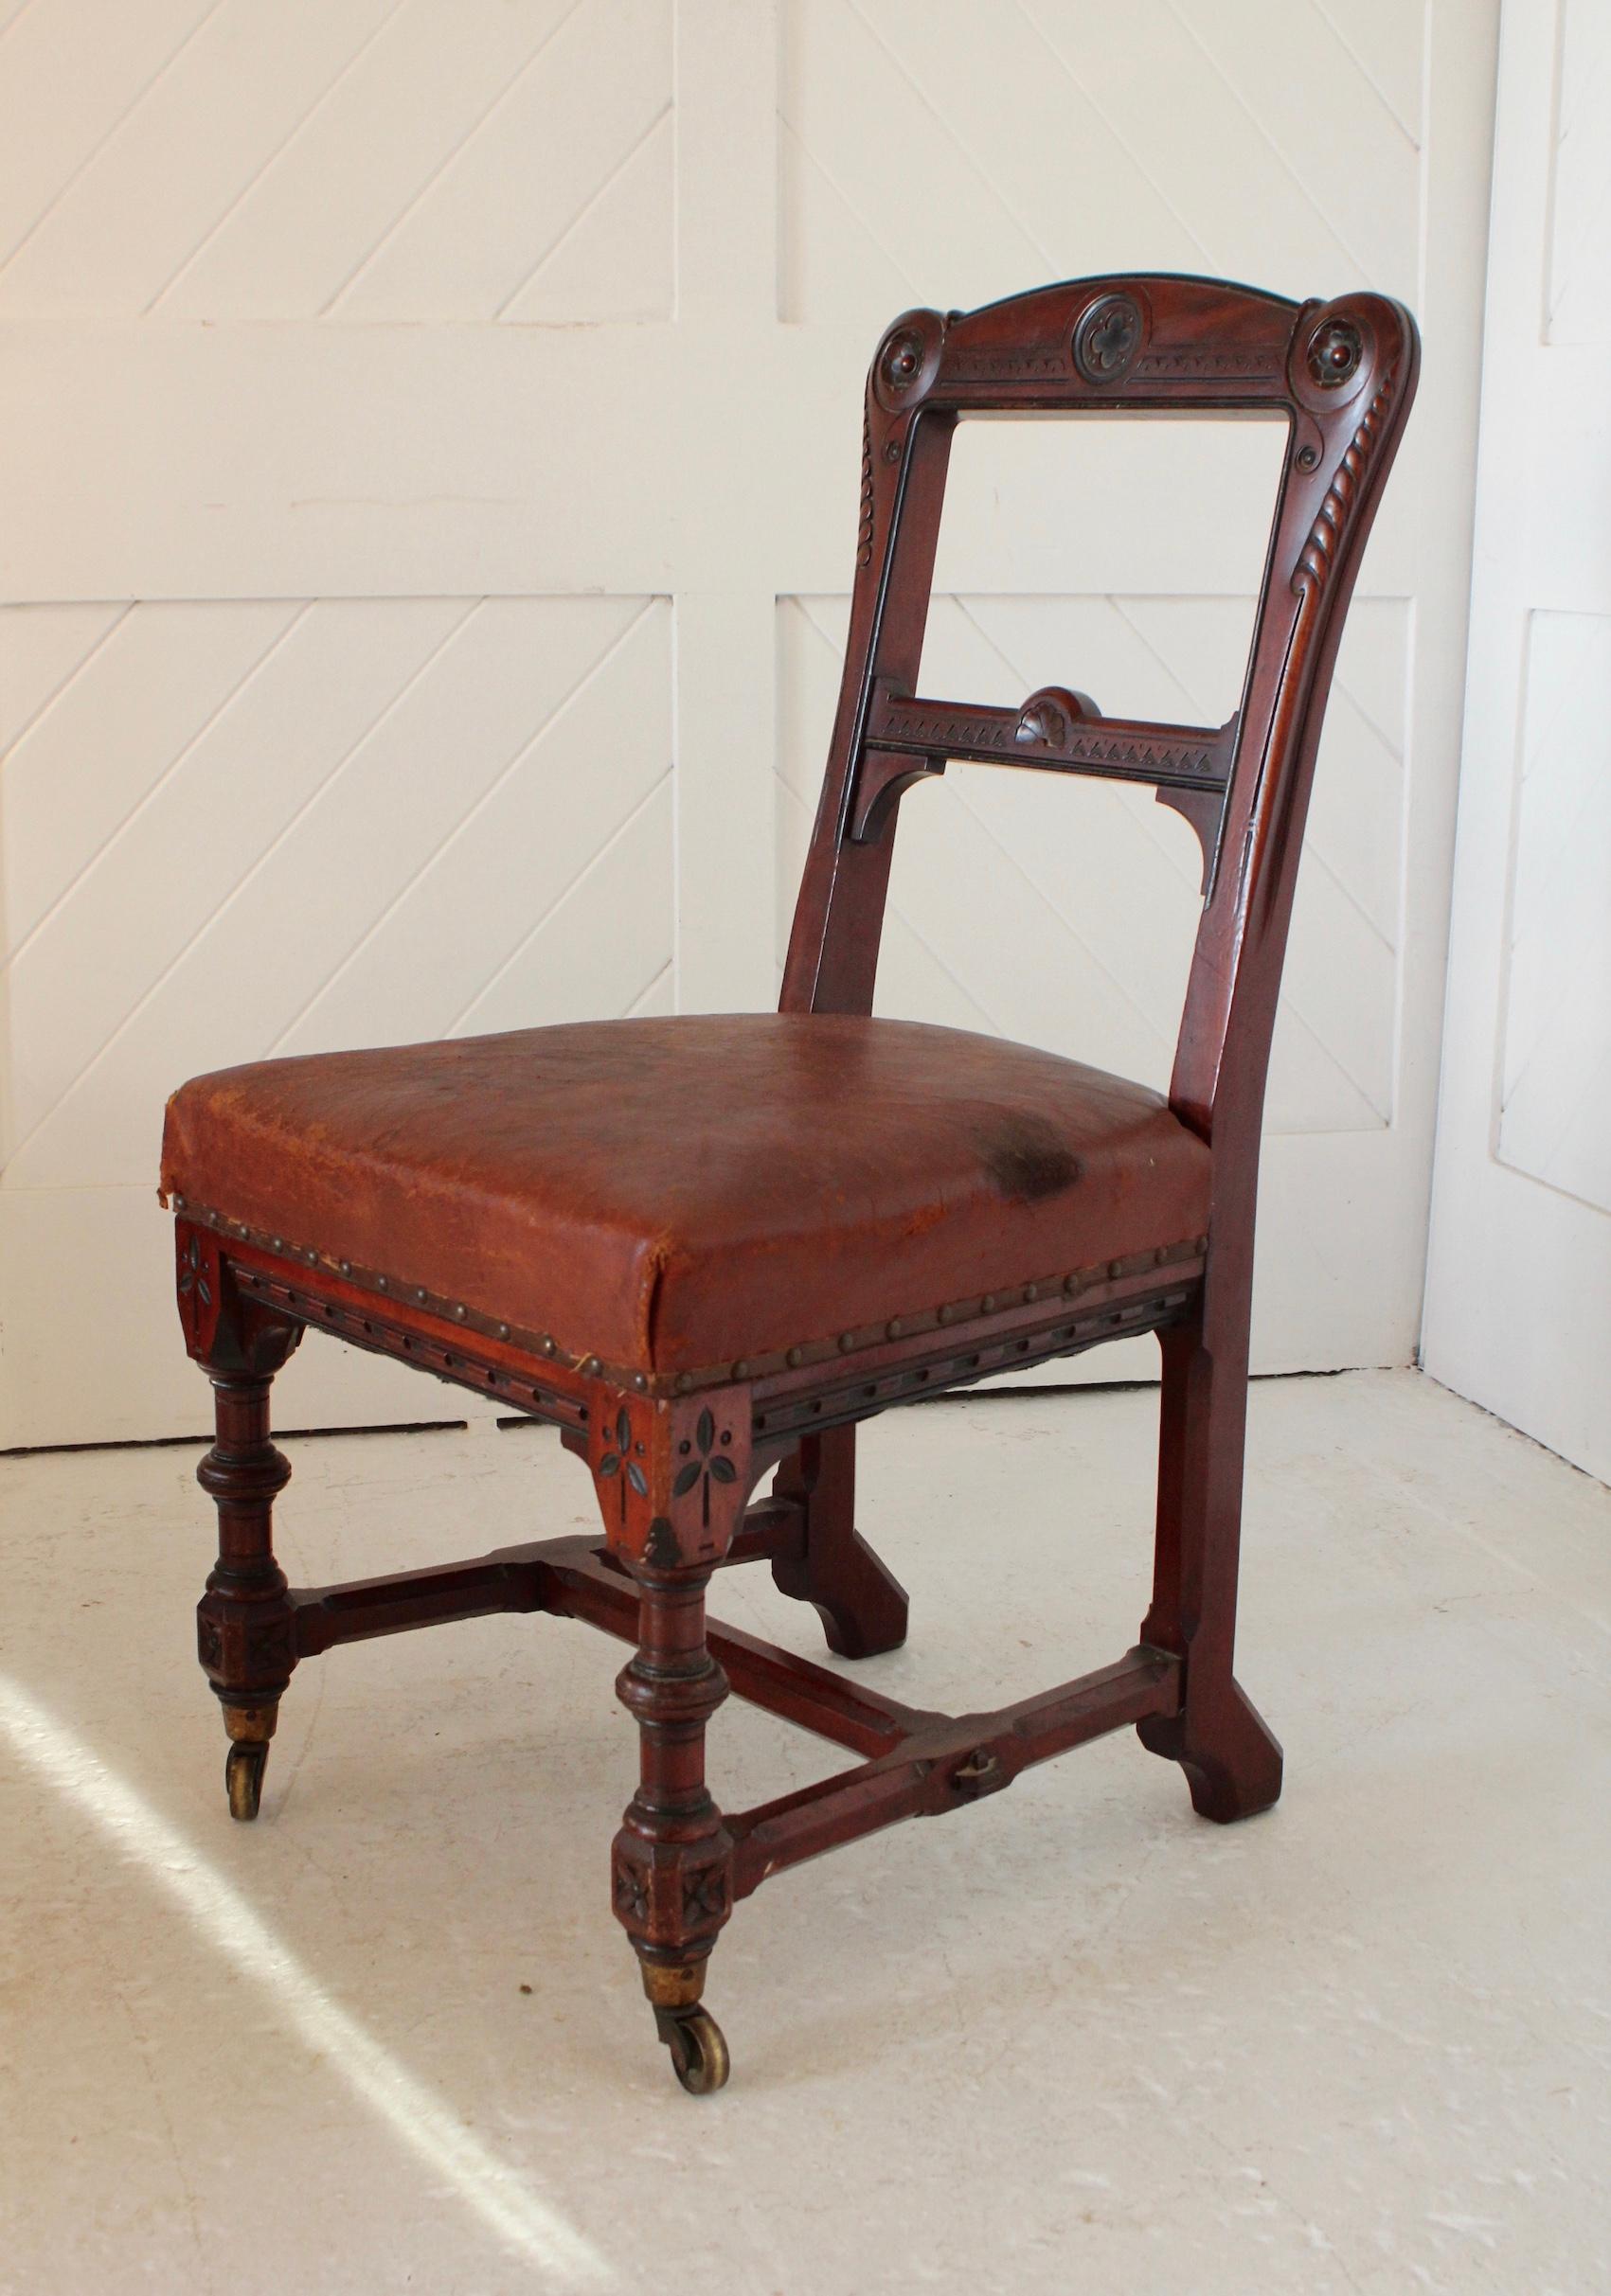 Stühle aus Mahagoni im Stil der Neogotik
Original Ledersitze
Rollen aus Messing

Ägyptisches Design und Ebenholzverzierungen

CIRCA 1870

Holland & Söhne 
